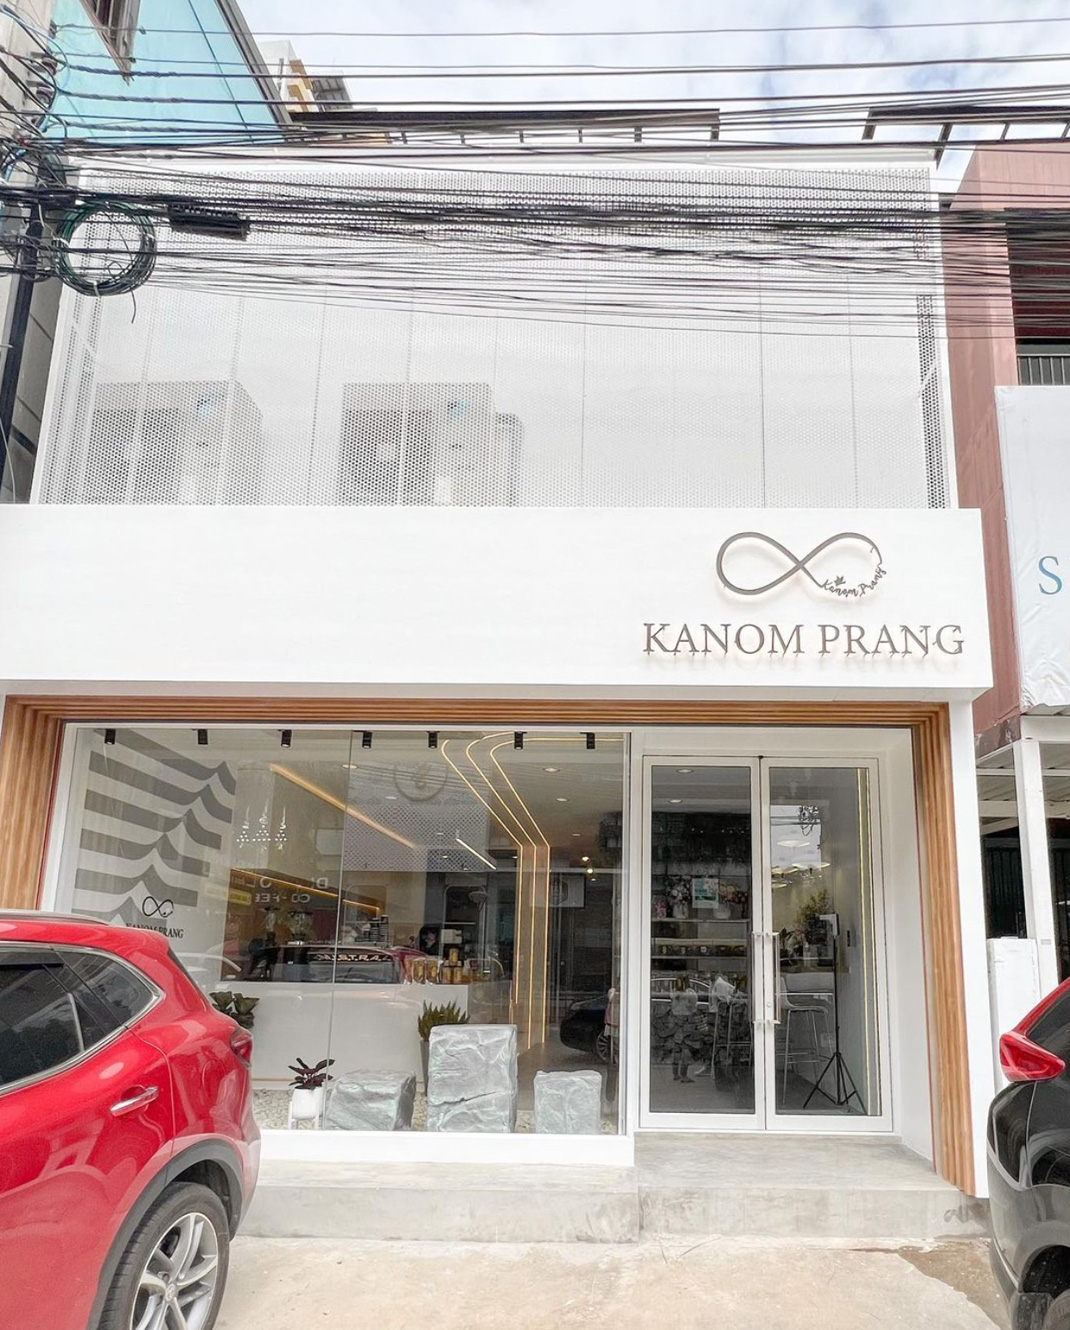 面包店Kanomprang 泰国 曼谷 面包店 白色 木色 logo设计 vi设计 空间设计